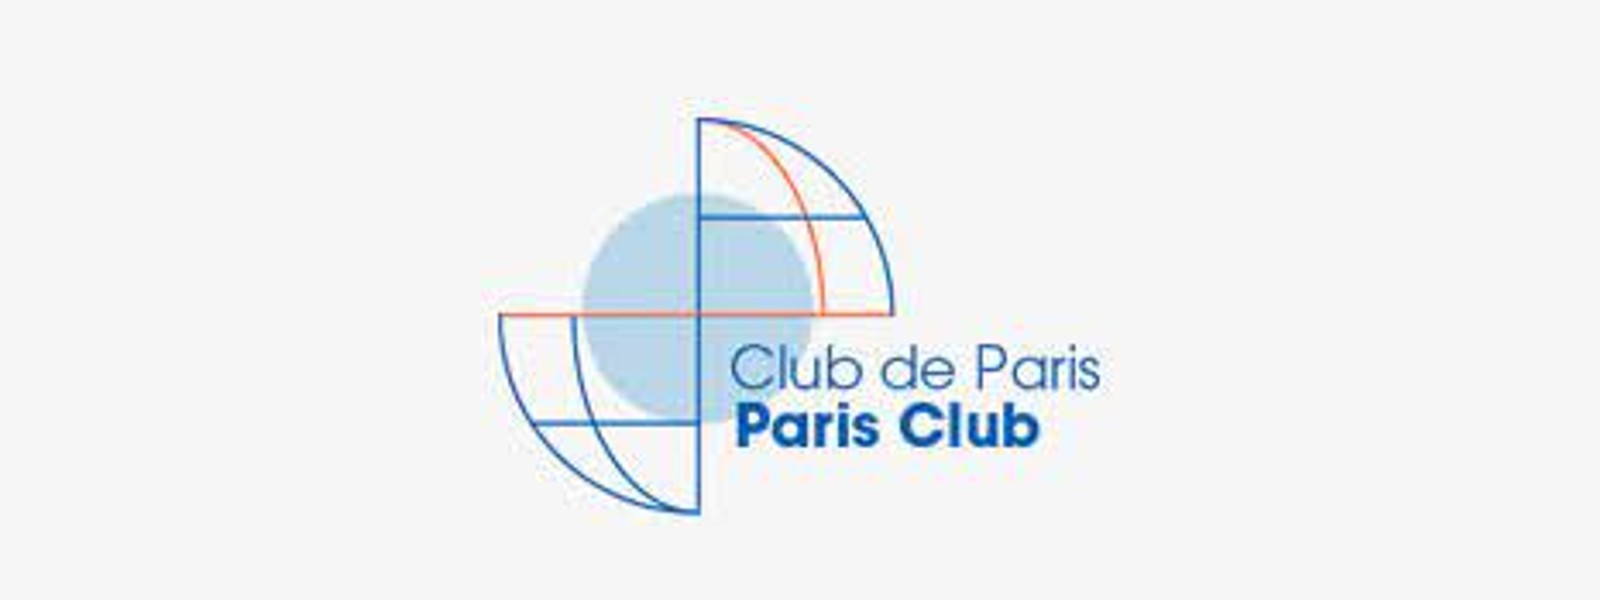 Paris Club to initiate debt relief program for SL